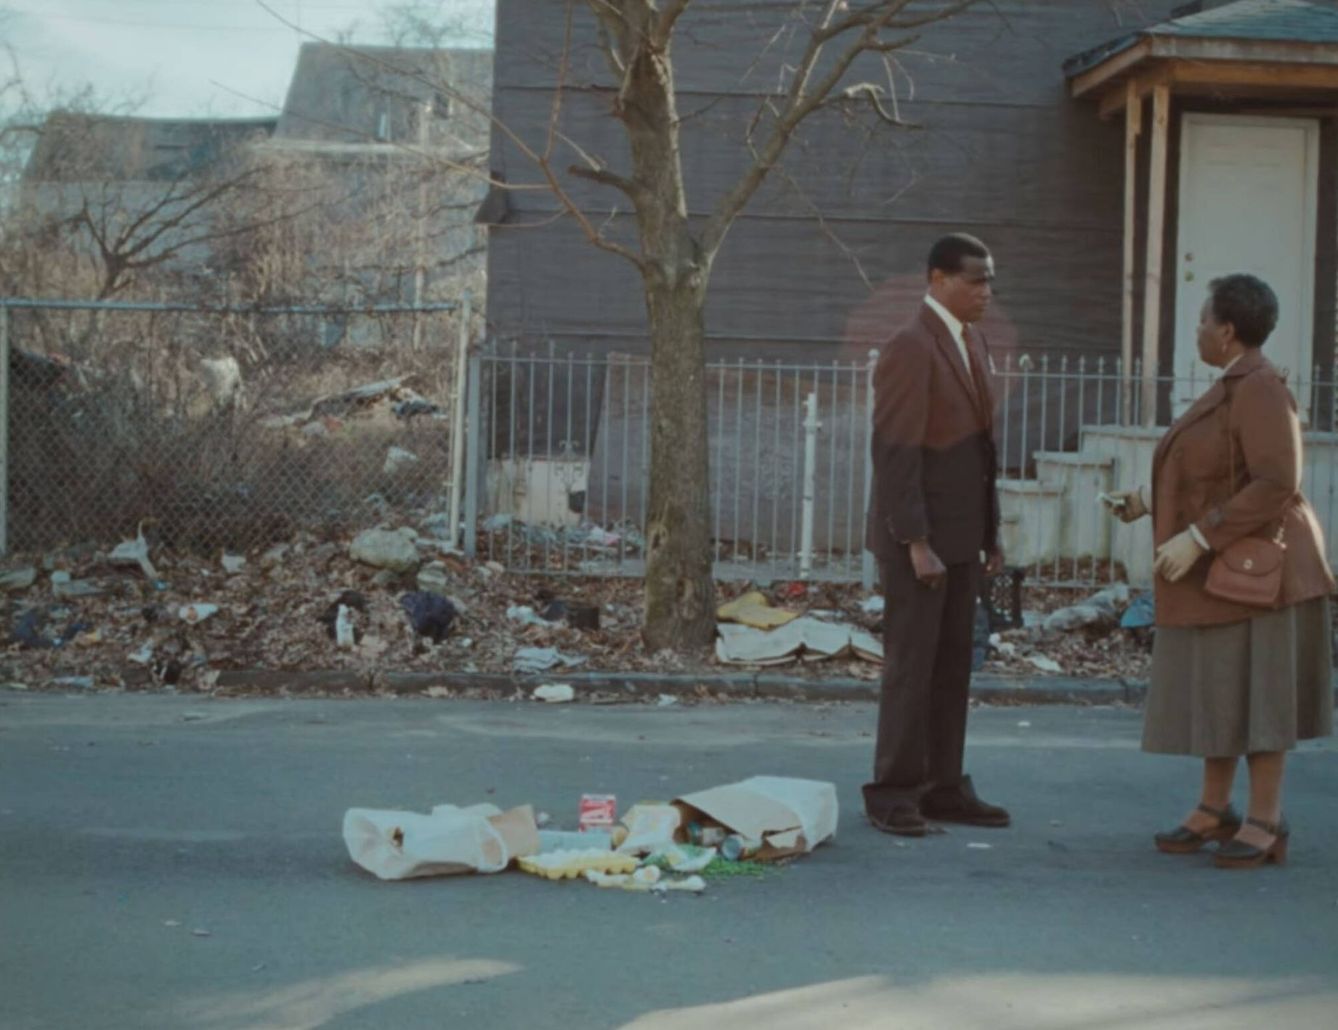  Una escena del corto de Malia Obama. (Sundance Film Institute)